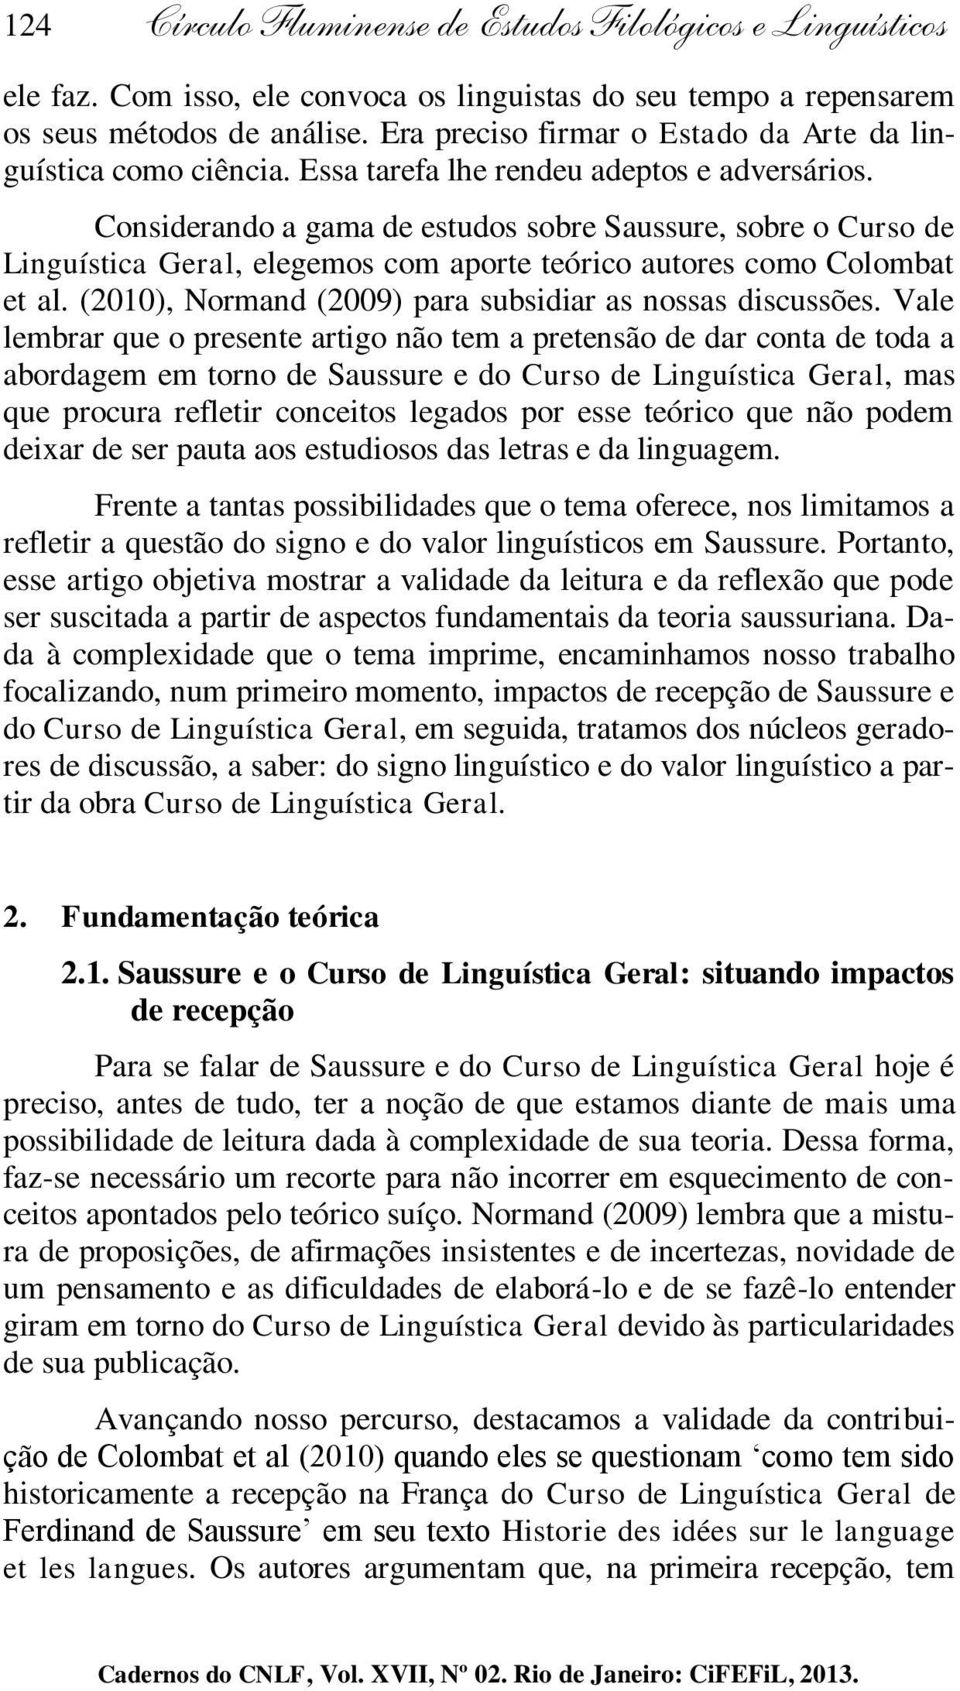 Considerando a gama de estudos sobre Saussure, sobre o Curso de Linguística Geral, elegemos com aporte teórico autores como Colombat et al. (2010), Normand (2009) para subsidiar as nossas discussões.